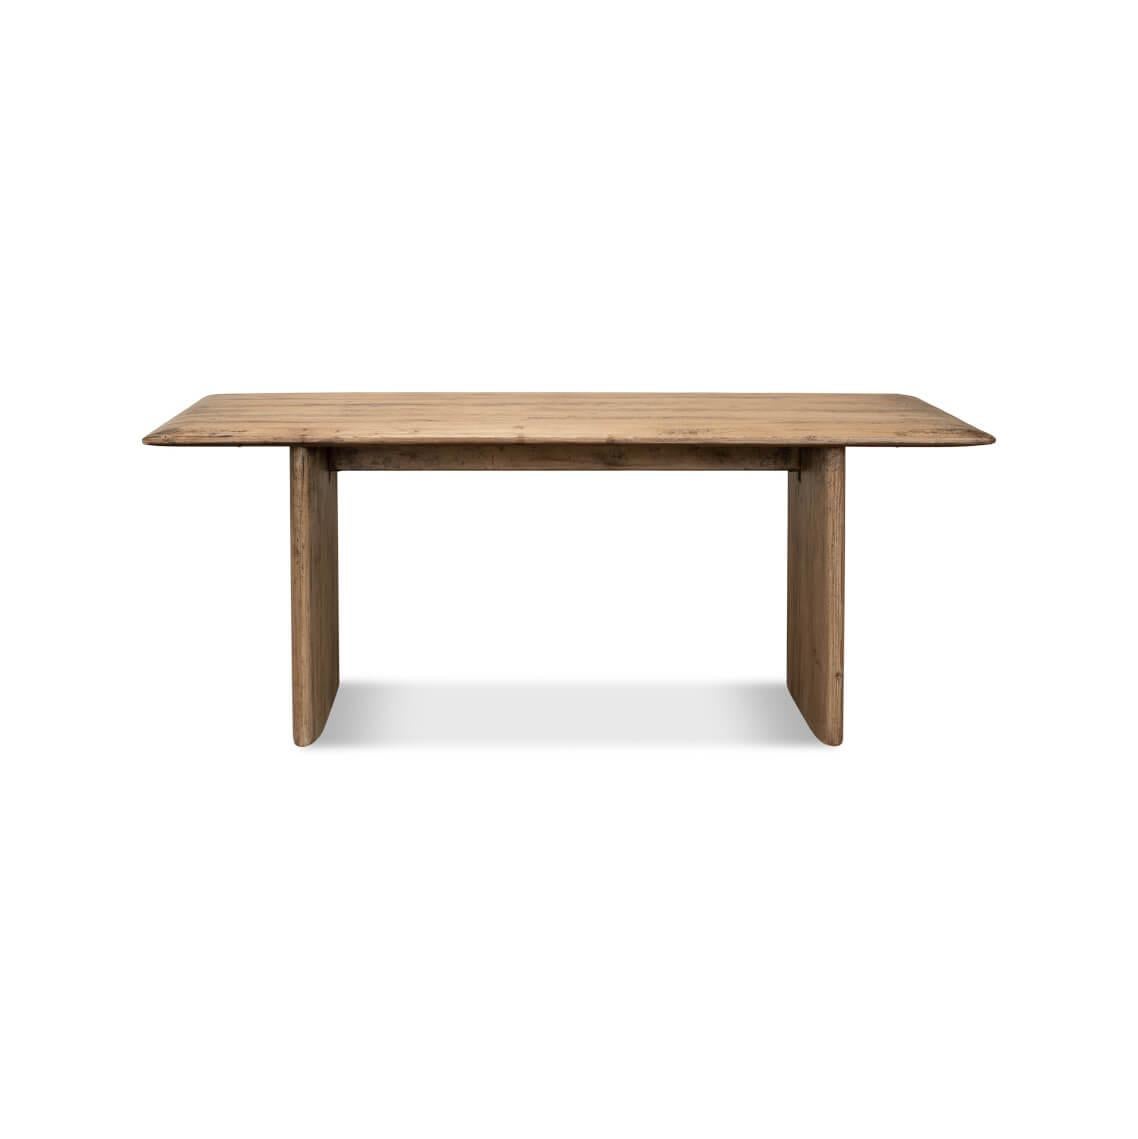 Un mélange harmonieux de simplicité et de chaleur pour votre salle à manger. Cette table présente une surface en bois naturel de pin récupéré avec un grain riche qui raconte son histoire unique. Sa silhouette minimaliste, caractérisée par des lignes